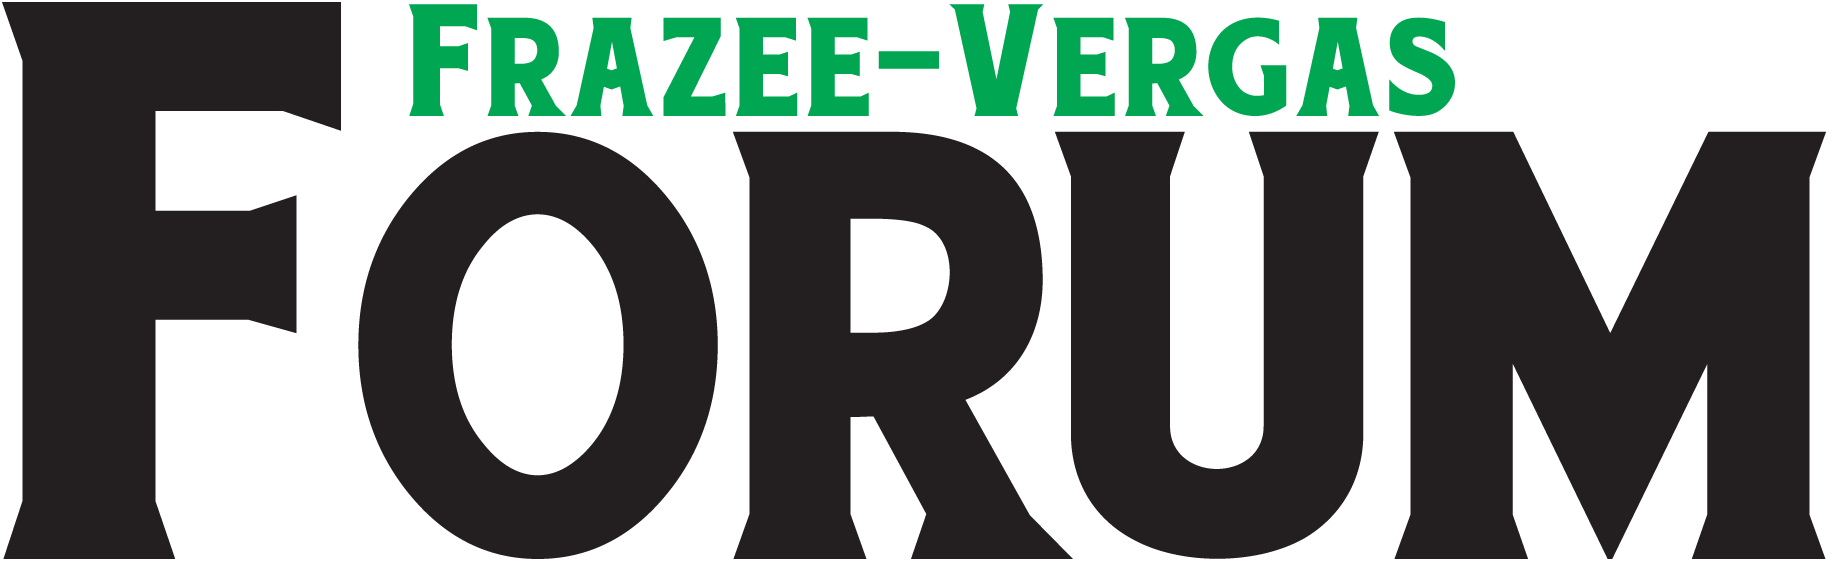 Frazee-Vergas Forum